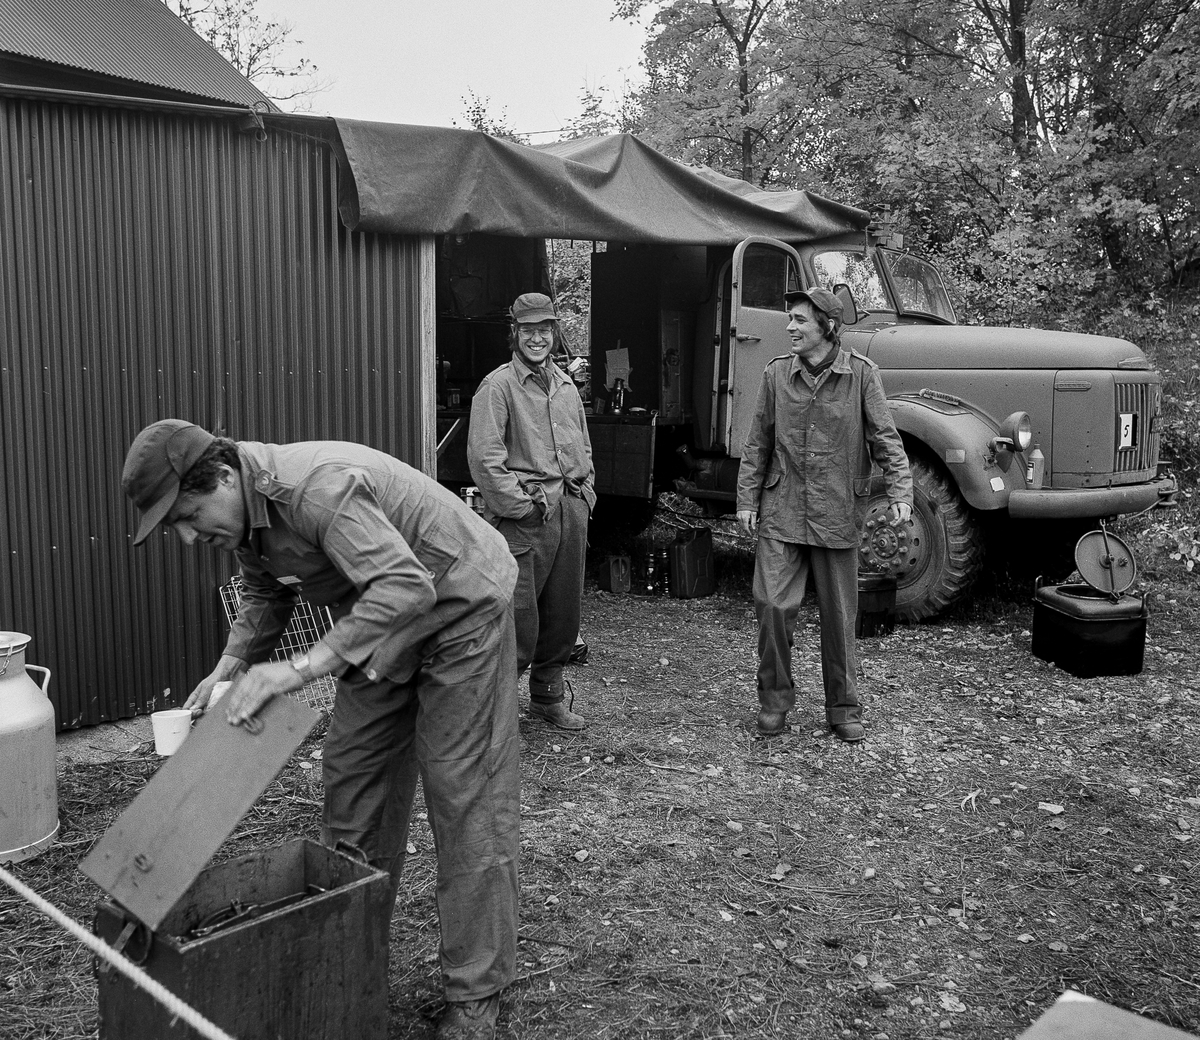 Kompaniet hade sin utbildnings- och förläggningsplats med tälten på grusplanen vid Elma på Norra fältet. 

Här ser vi kokgruppen förbereda kaffeservering.

OBS! två bilder.